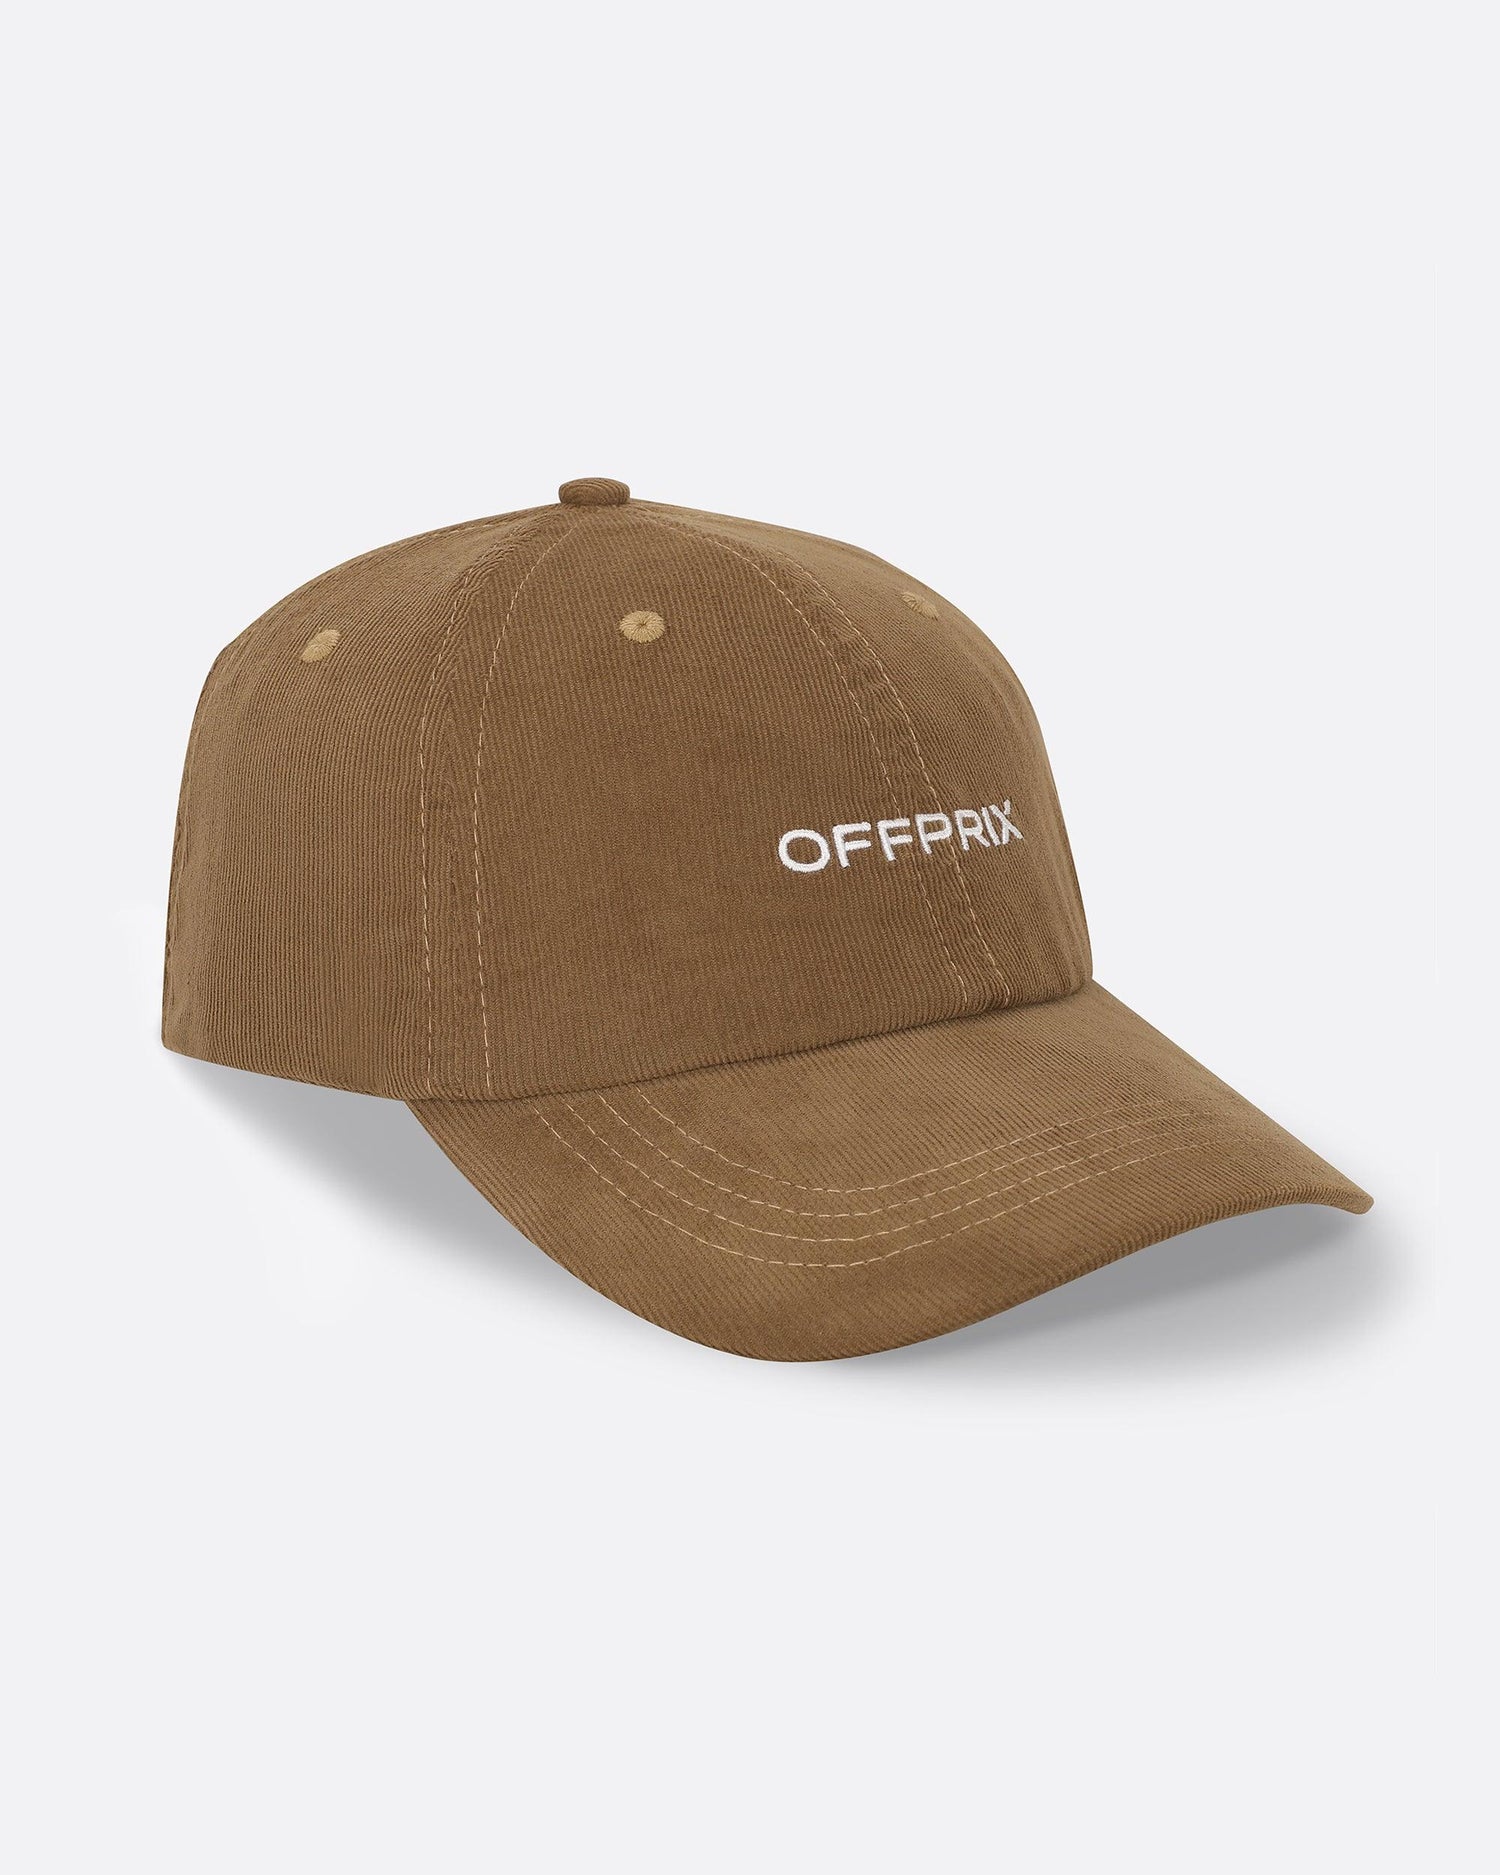 CAP - KHAKI - OFFPRIX